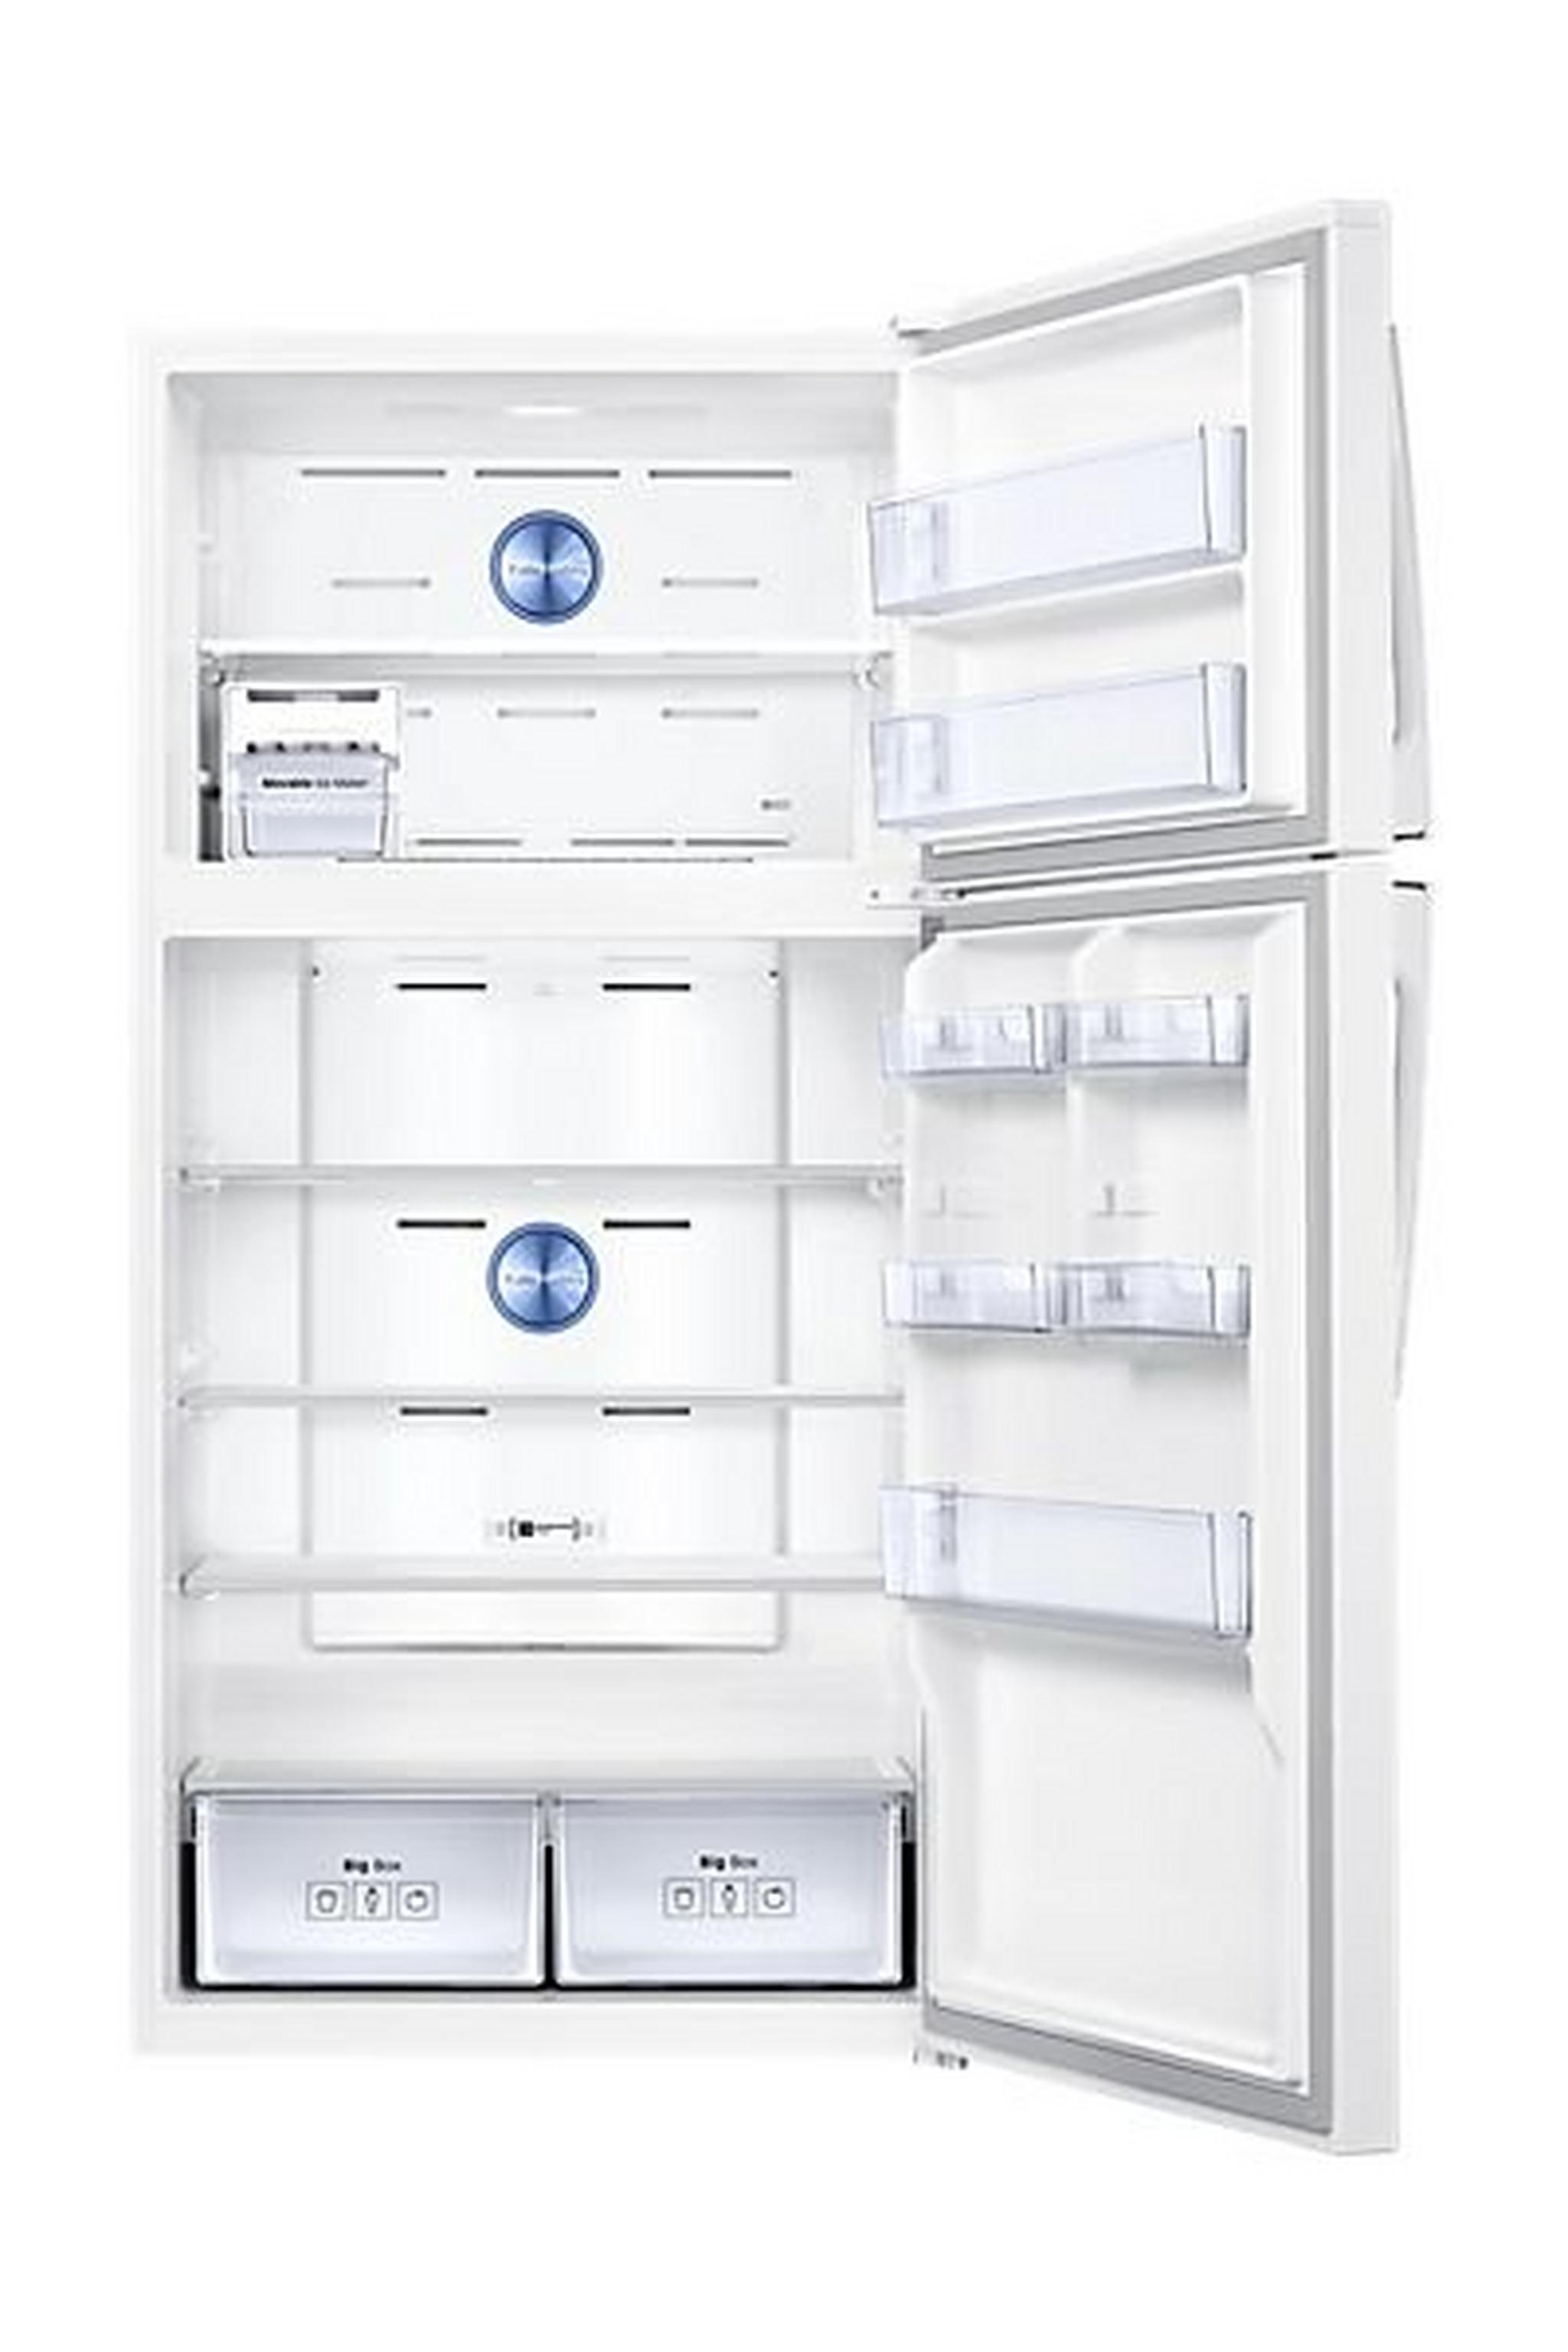 Samsung 29 Cft Top Mount Refrigerator (RT81K7010WW) – White